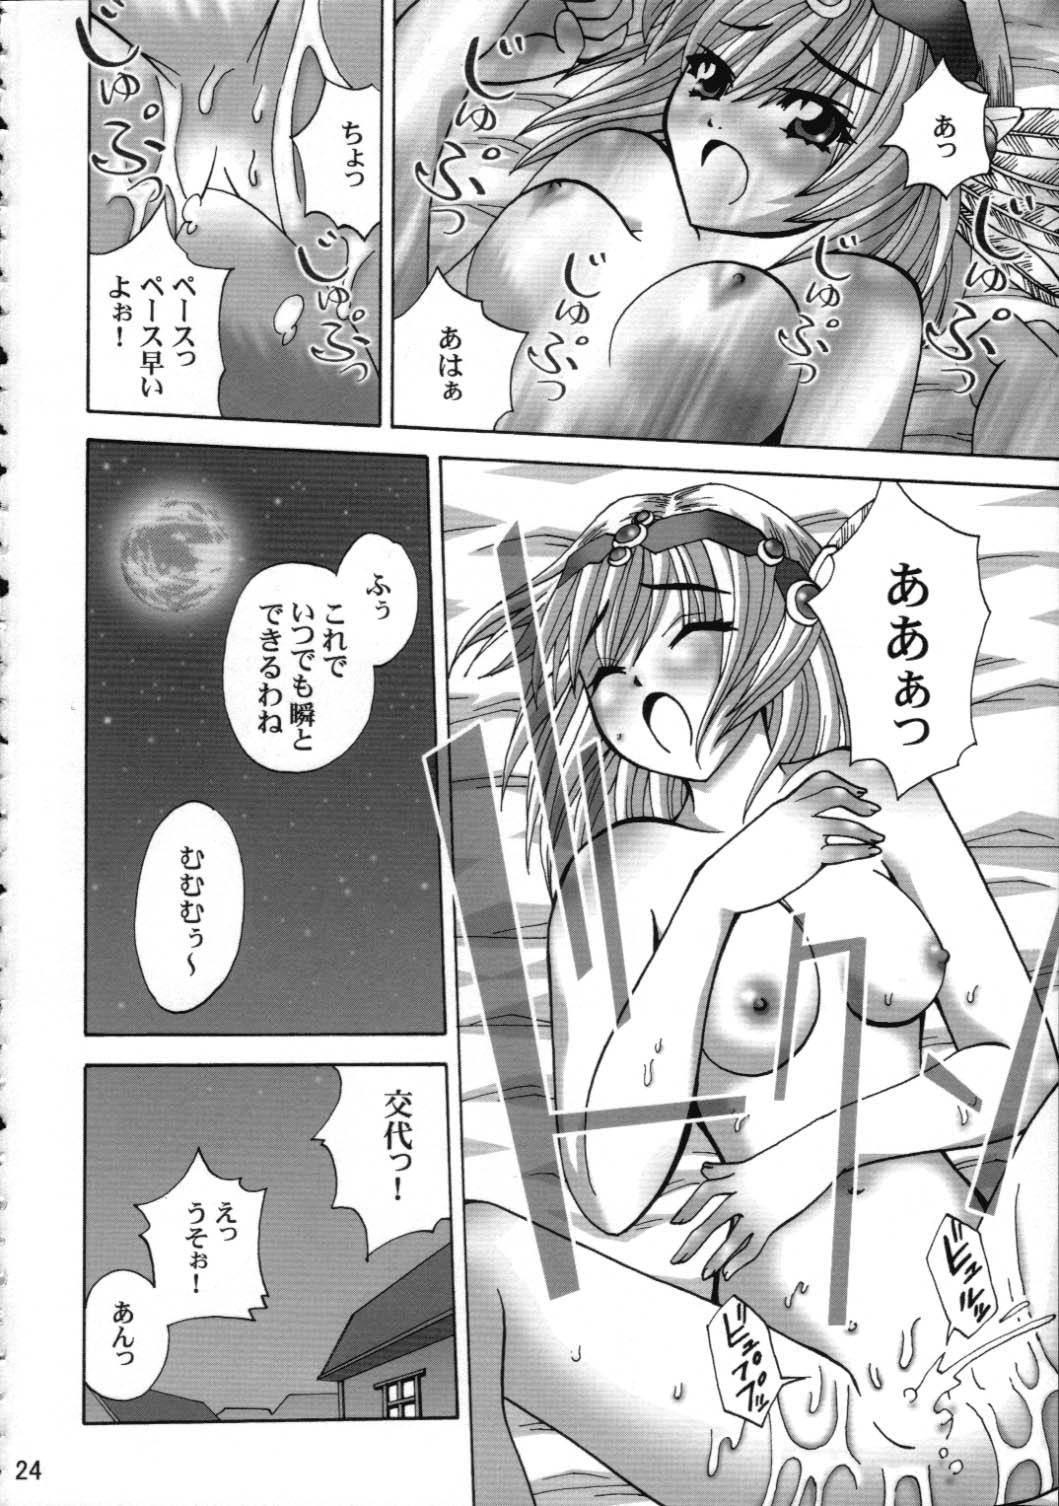 Blowjob Toraware no Shoujo - Kouryuu densetsu villgust Calle - Page 23